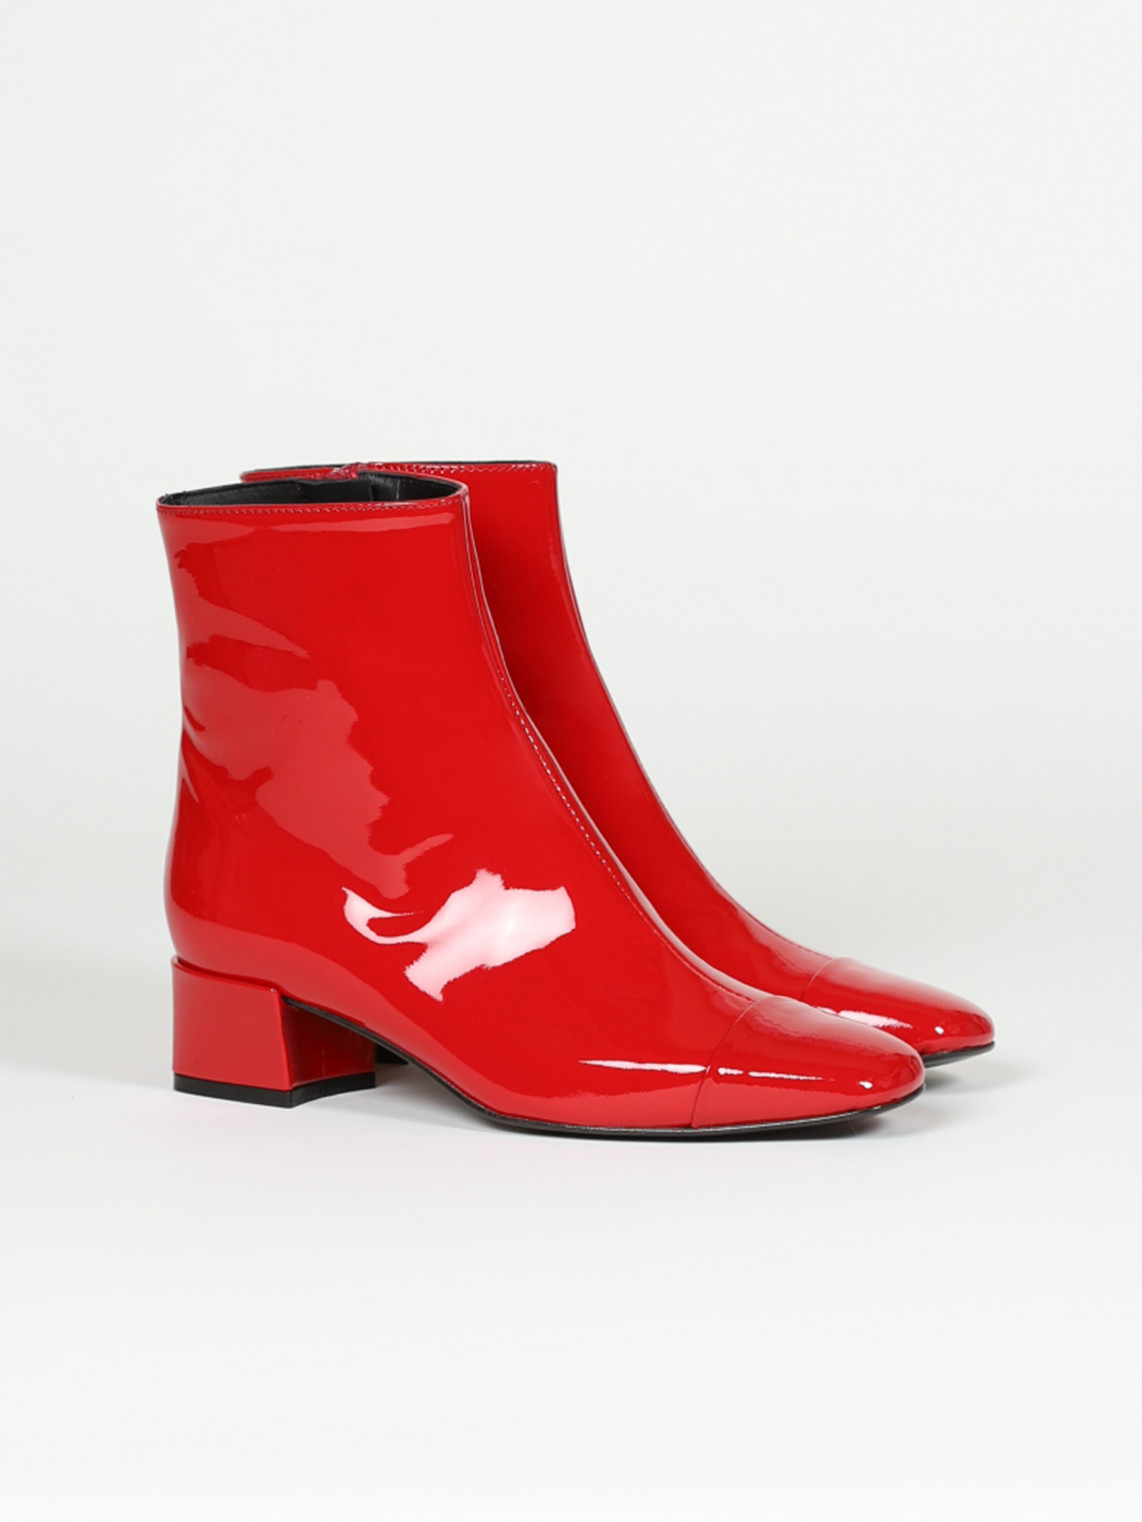 ESTIME red patent leather ankle boots | Carel Paris Shoes